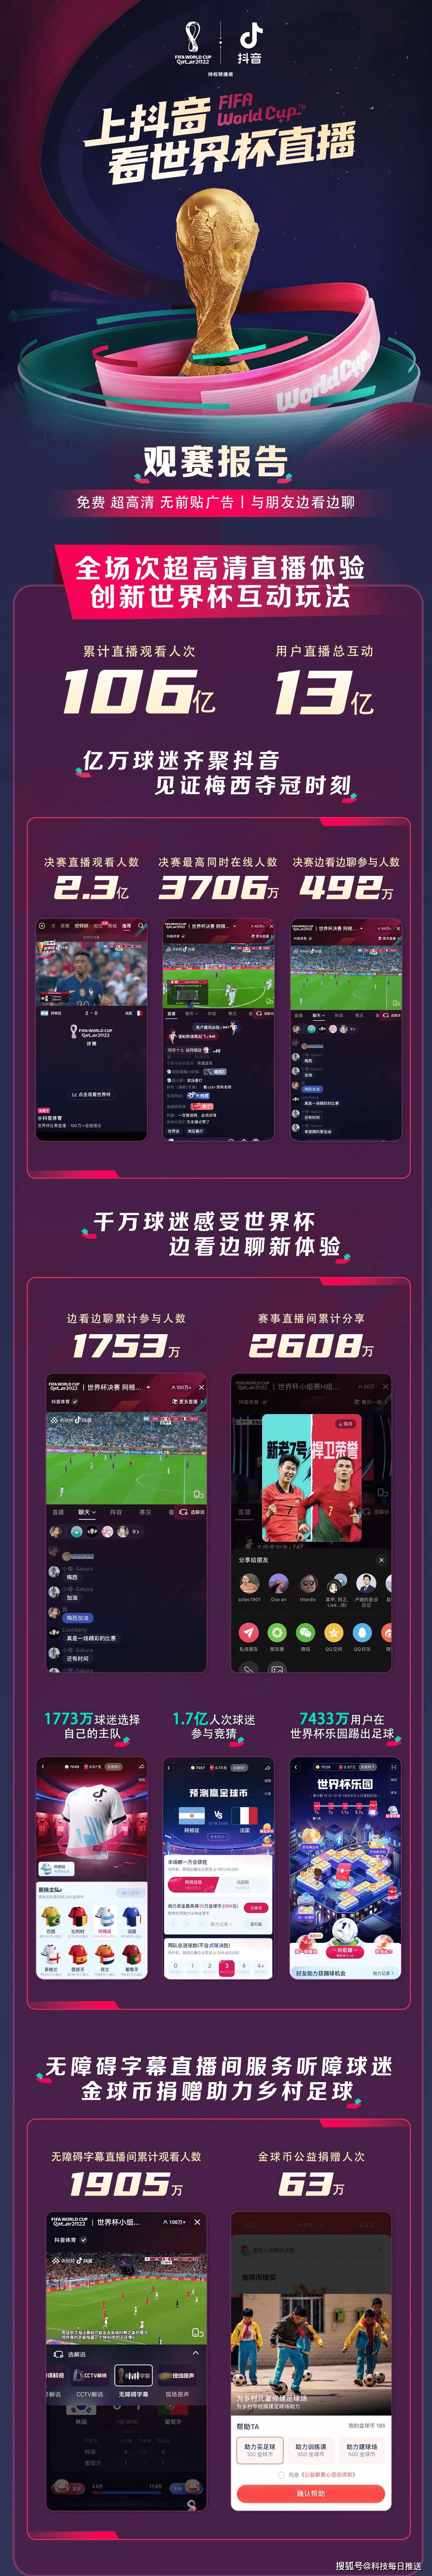 抖音广告一元抢苹果版:抖音赢麻了，2022世界杯累计直播观看人次达106亿